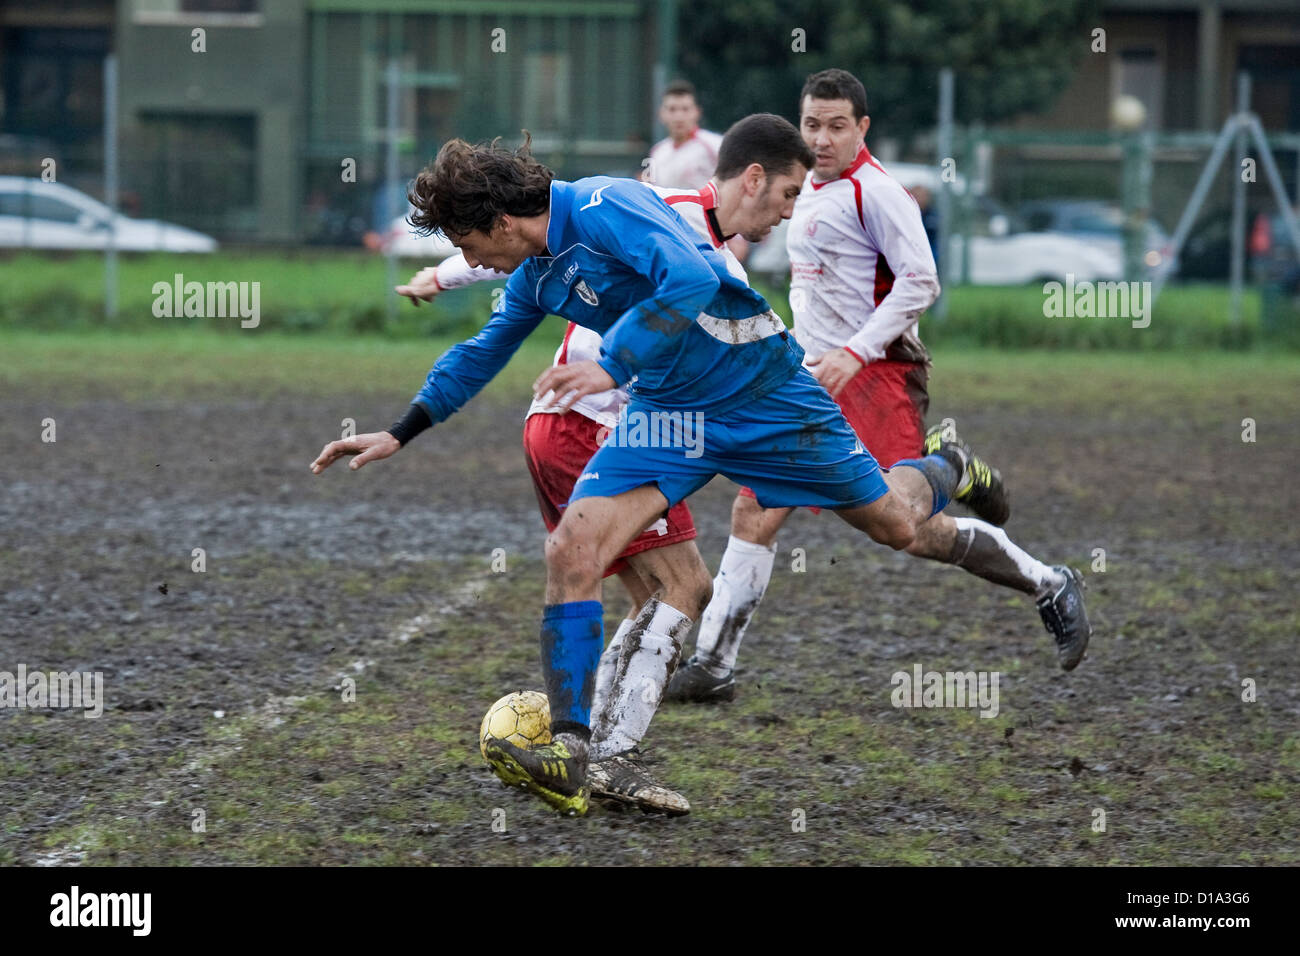 Italy, Sesto san Giovanni, football game Stock Photo